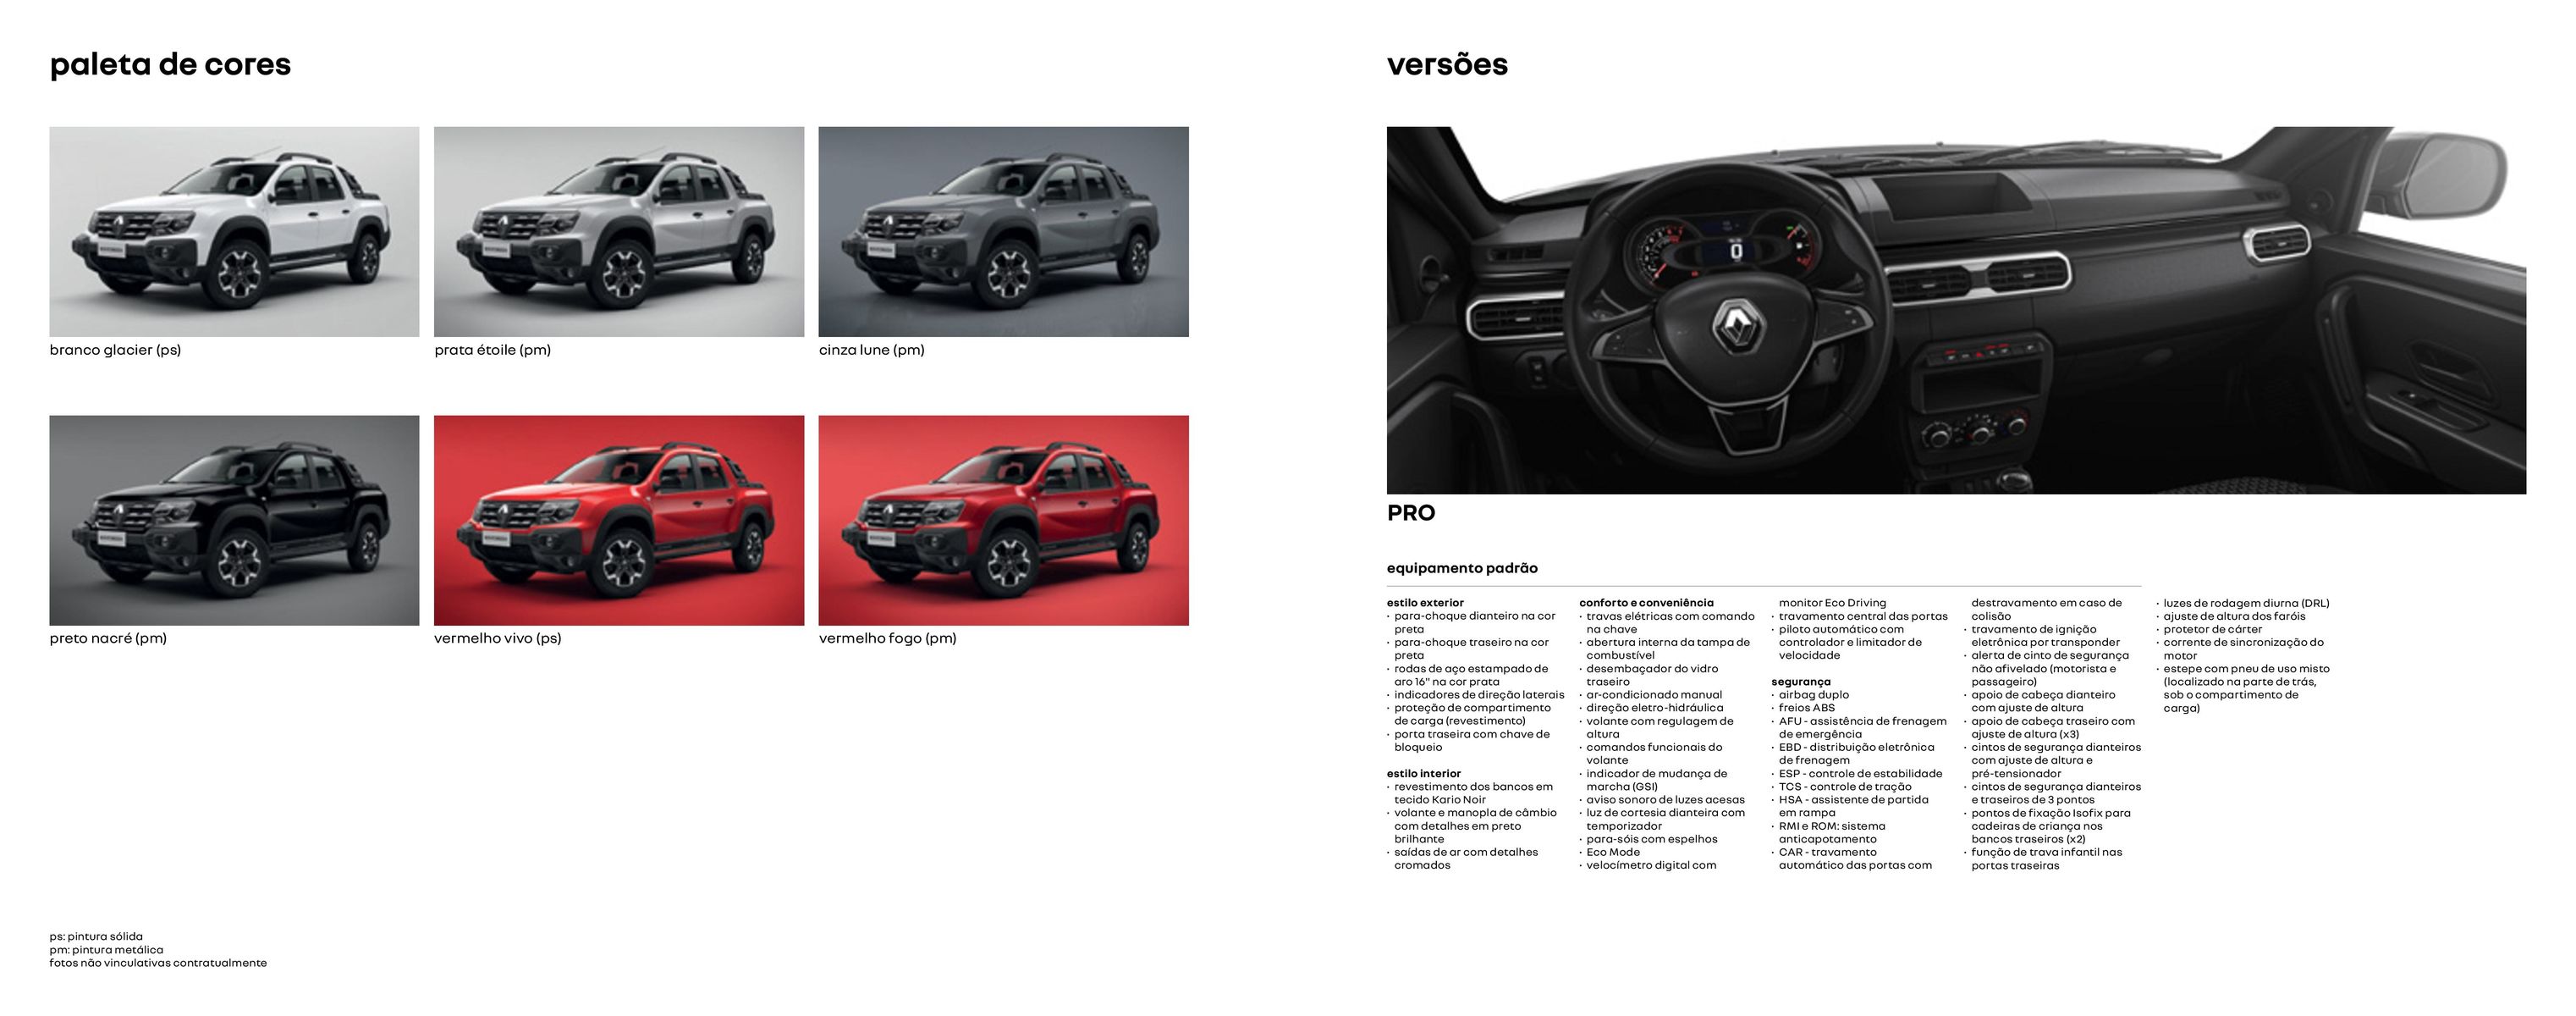 Verões e especificações do Renault PRO